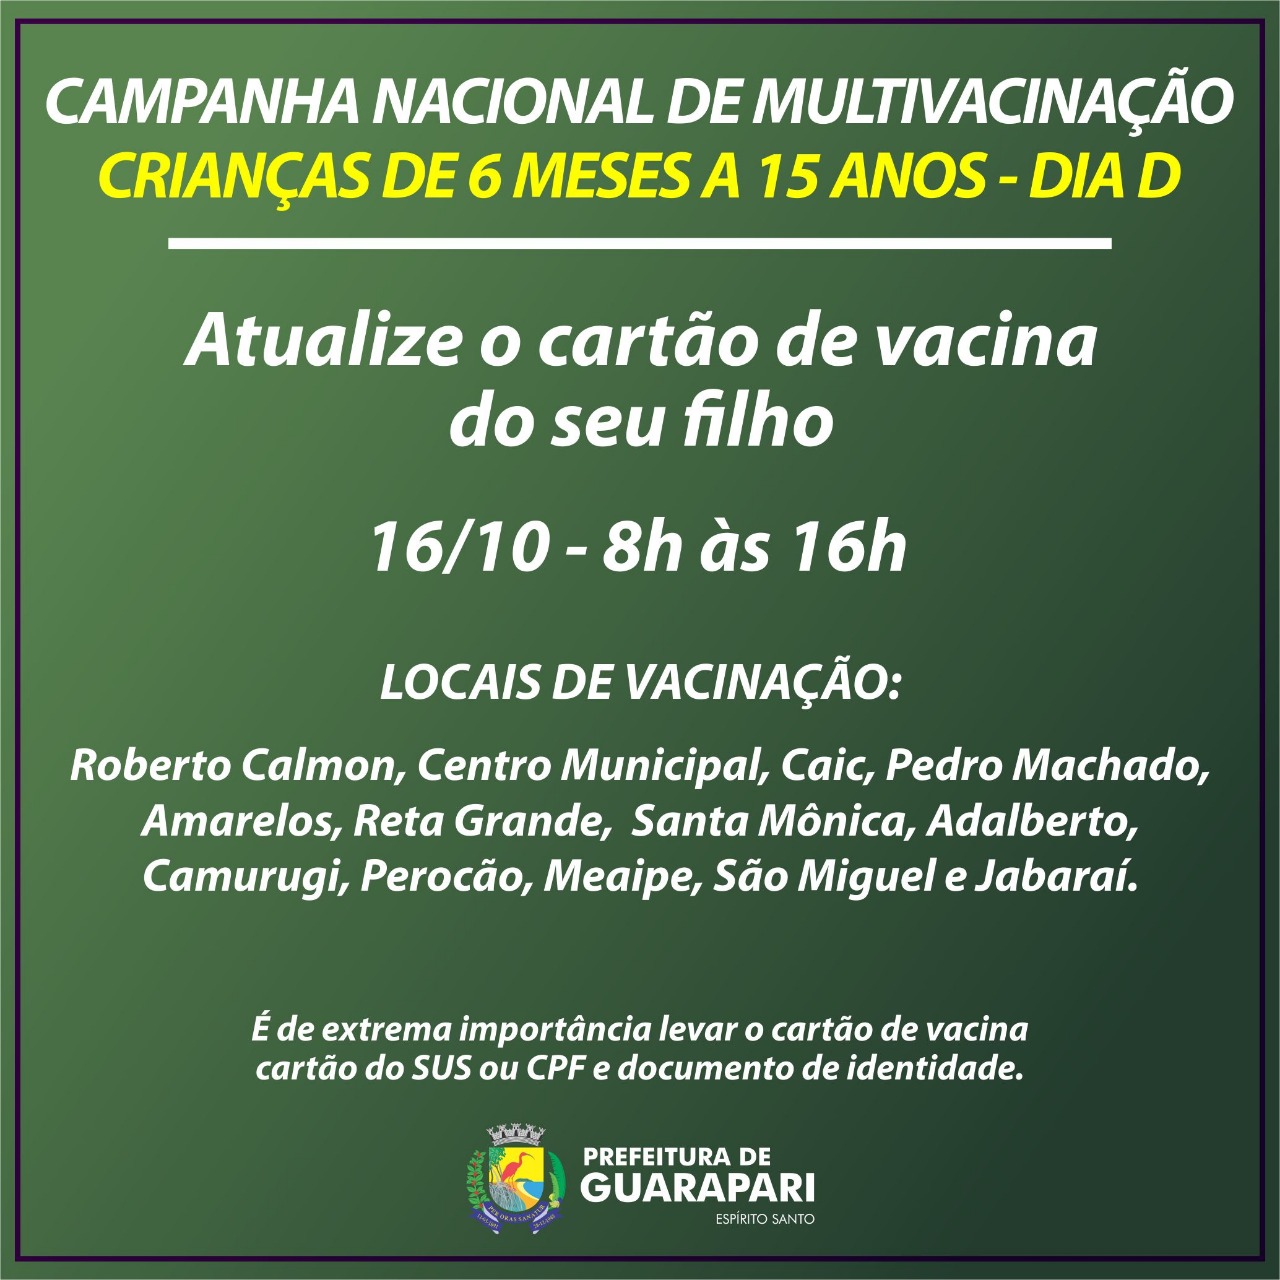 Neste sábado tem campanha de multivacinação em Guarapari 